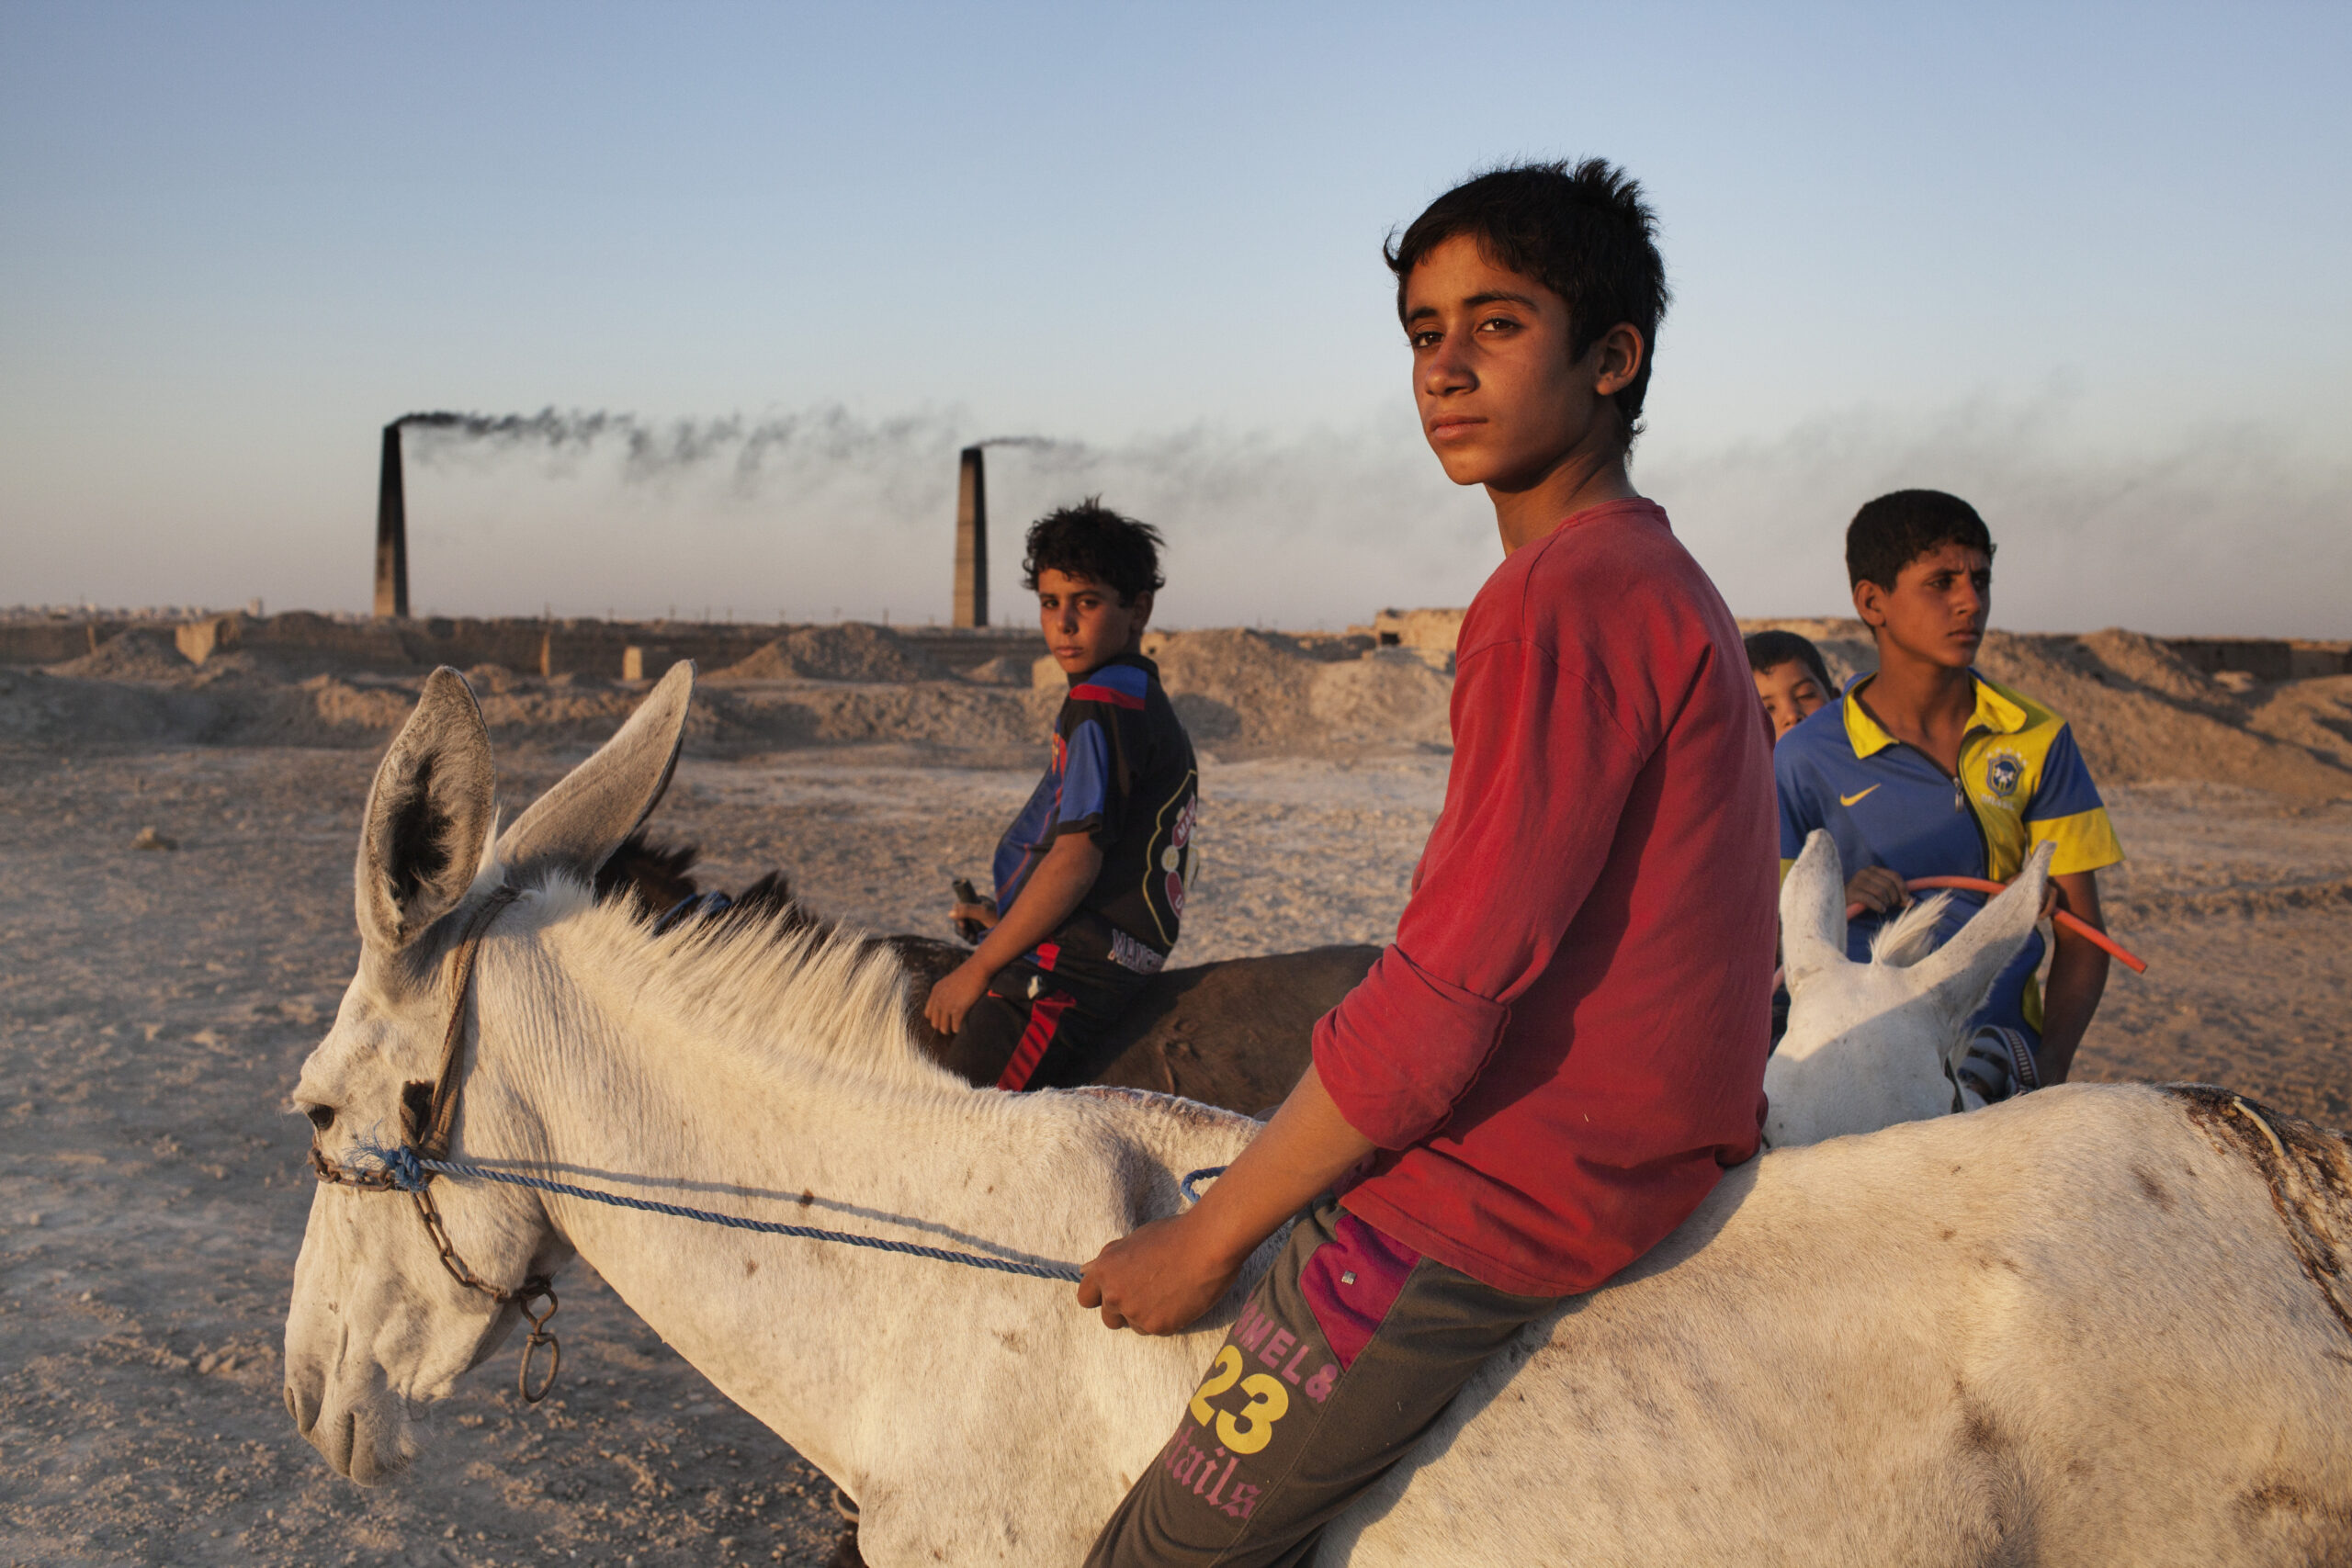 Děti pracující v silně znečištěné cihelně. Nadžaf, Irák, červenec 2013.